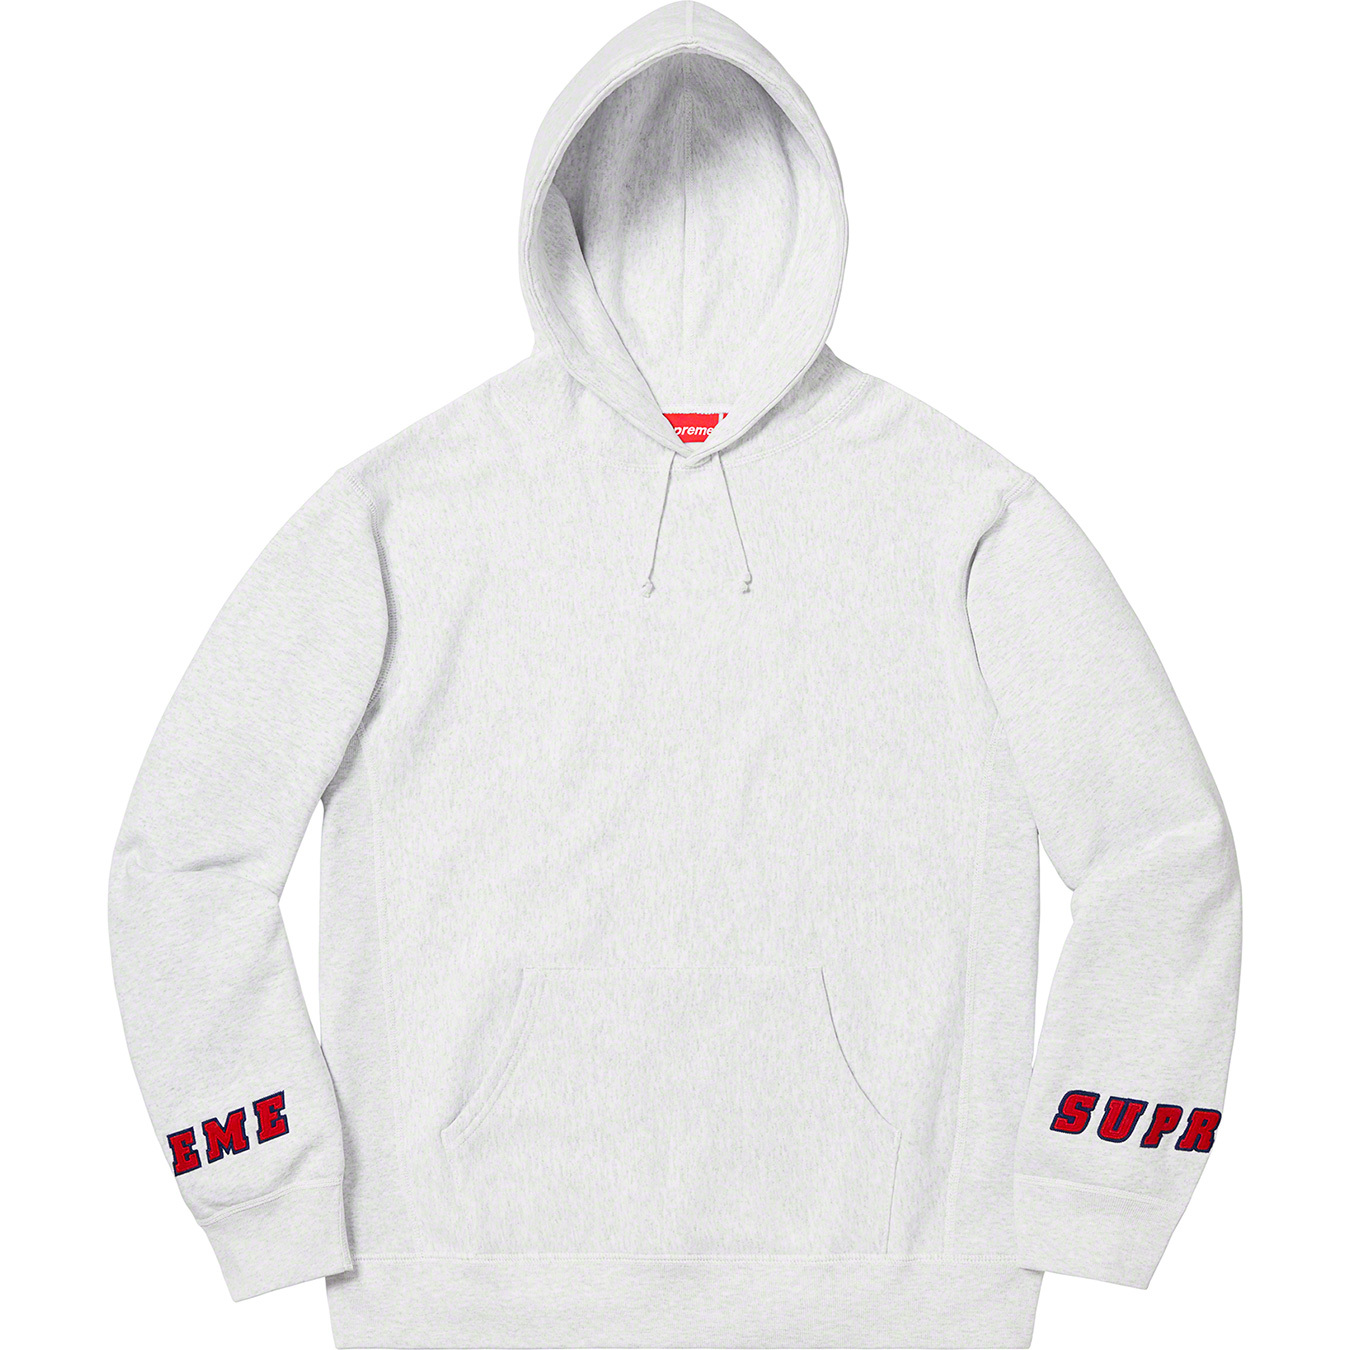 発売開始 Supreme Sweatshirt Hooded Logo Wrist パーカー